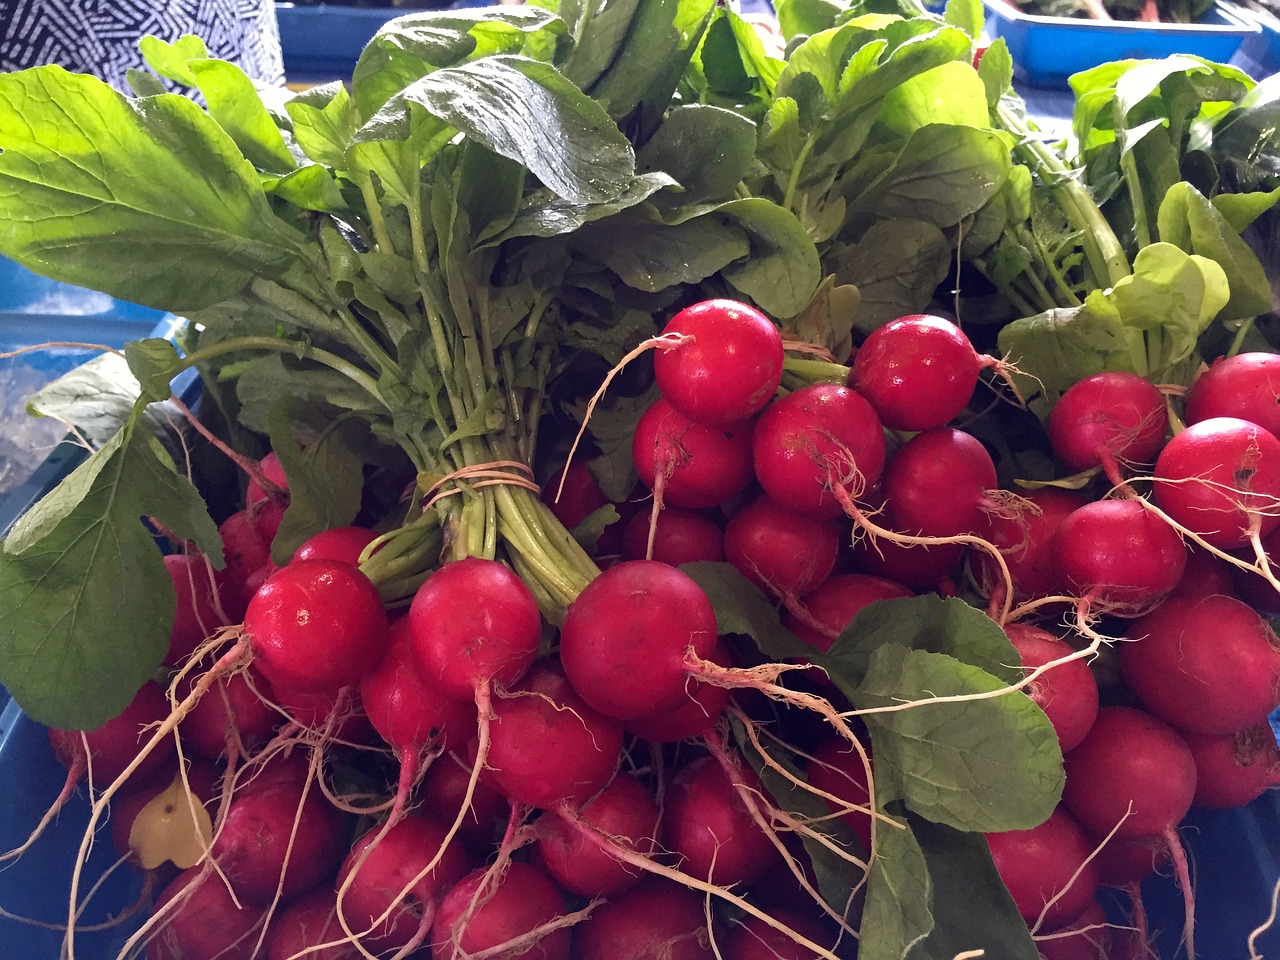 Image - radishes fresh market food healthy